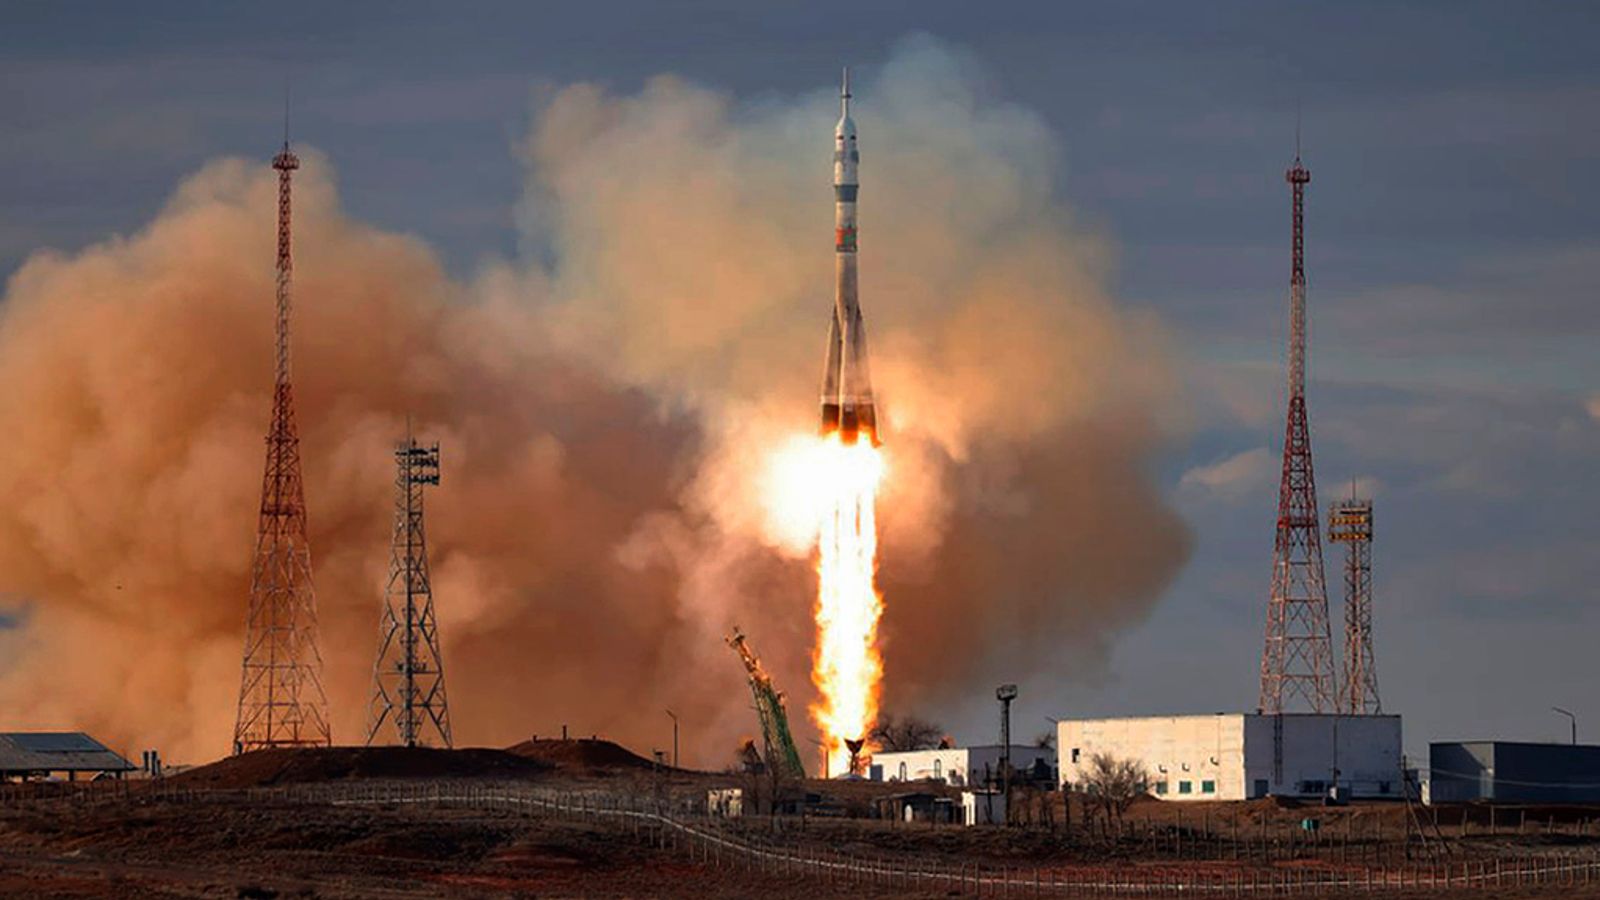 انطلق الصاروخ من كازاخستان وعلى متنه رواد فضاء من وكالة ناسا وروسيا.  اخبار العالم